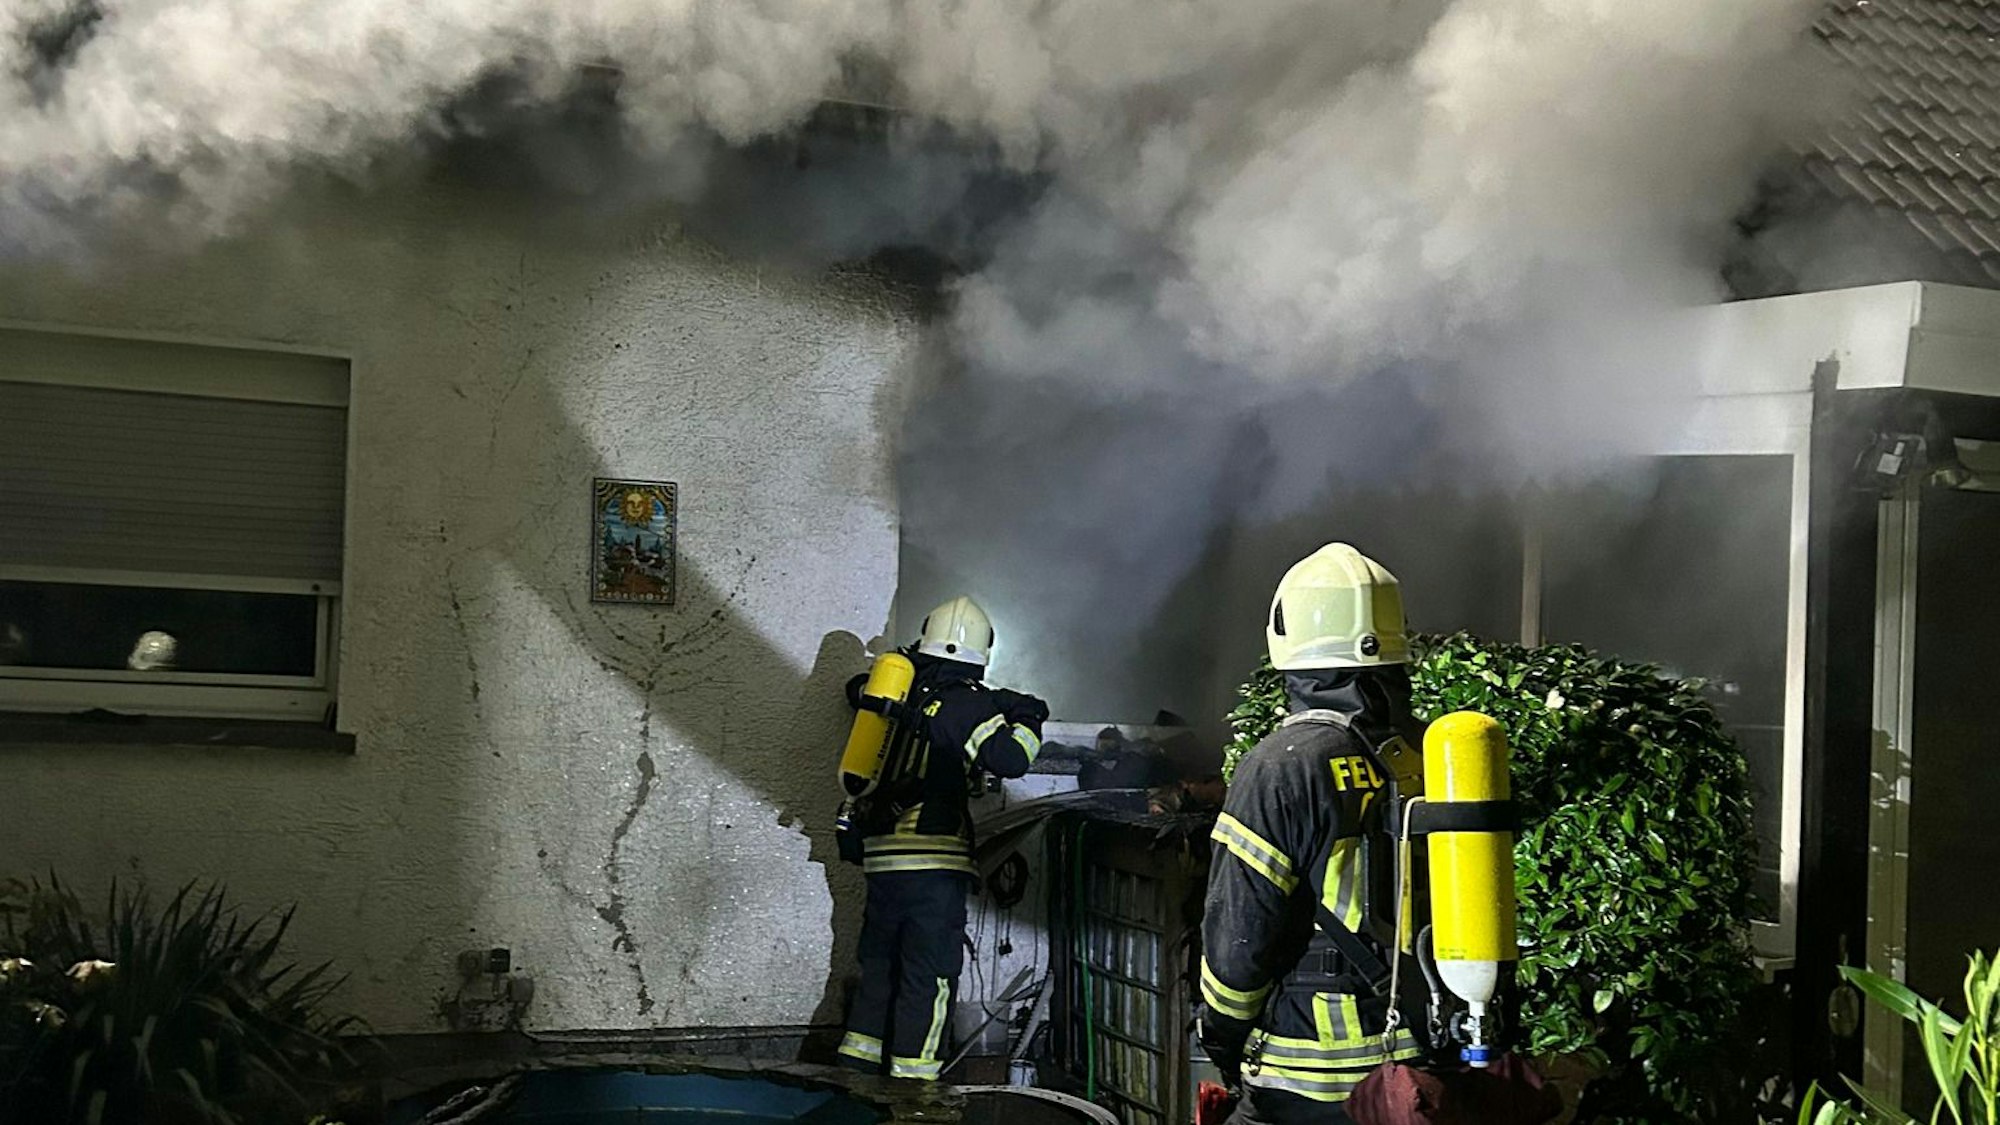 Feuerwehrleute löschen ein Haus, aus dem dunkler Rauch quillt.